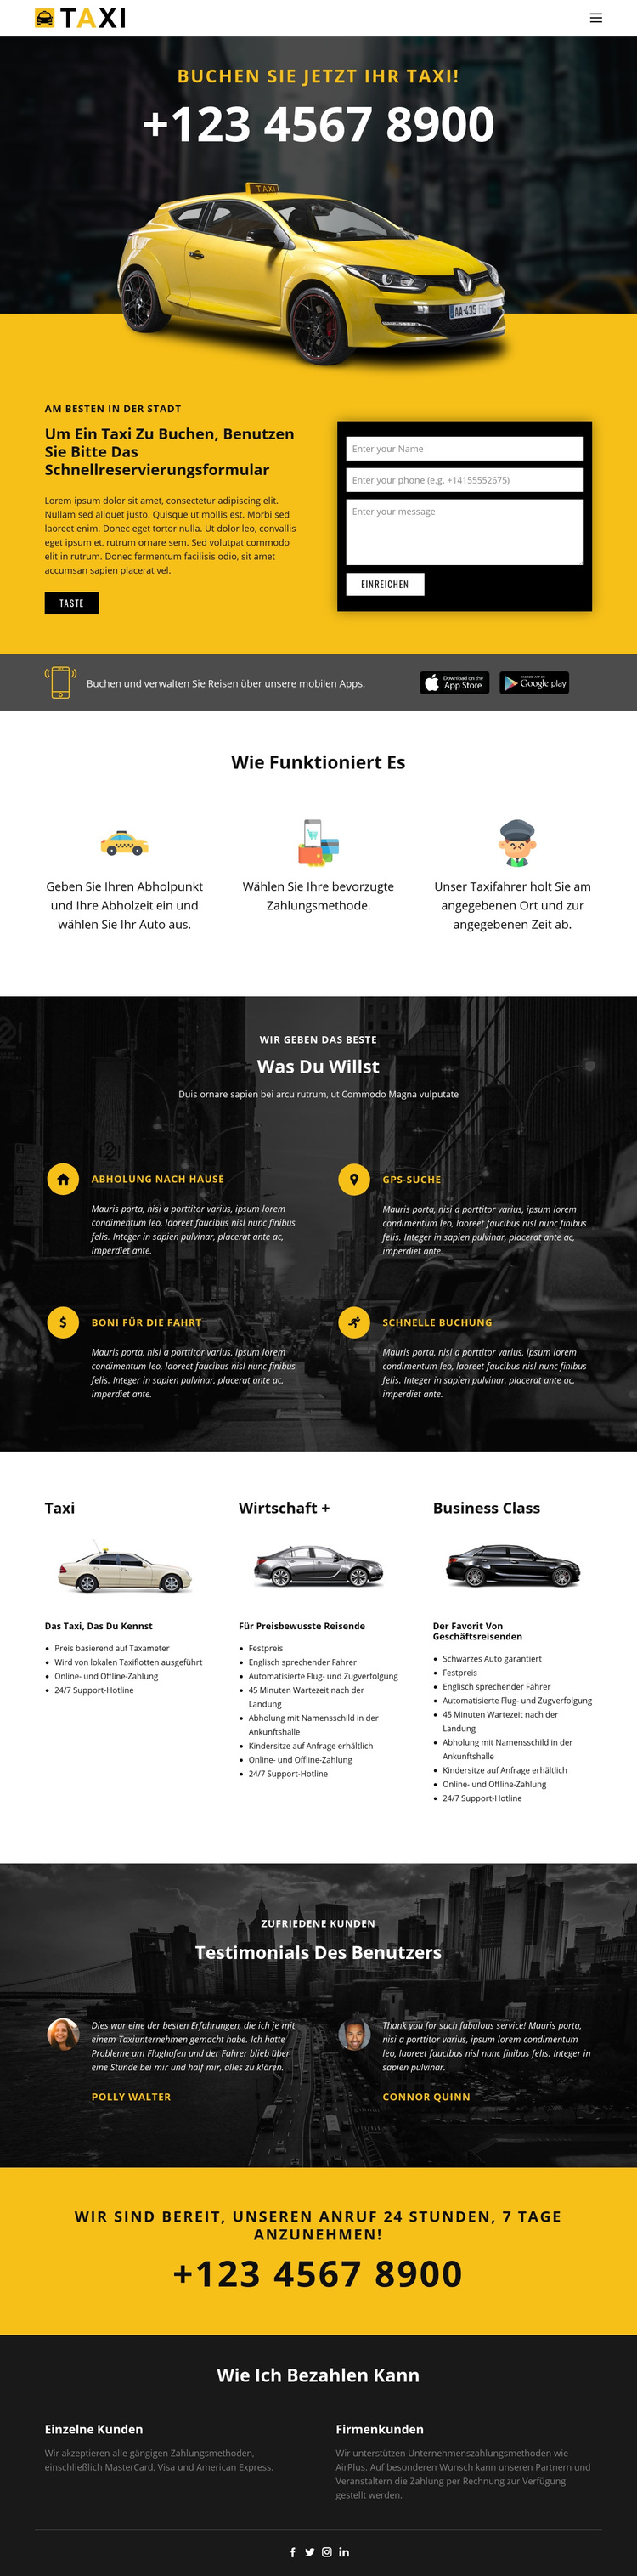 Schnellste Taxis WordPress-Theme